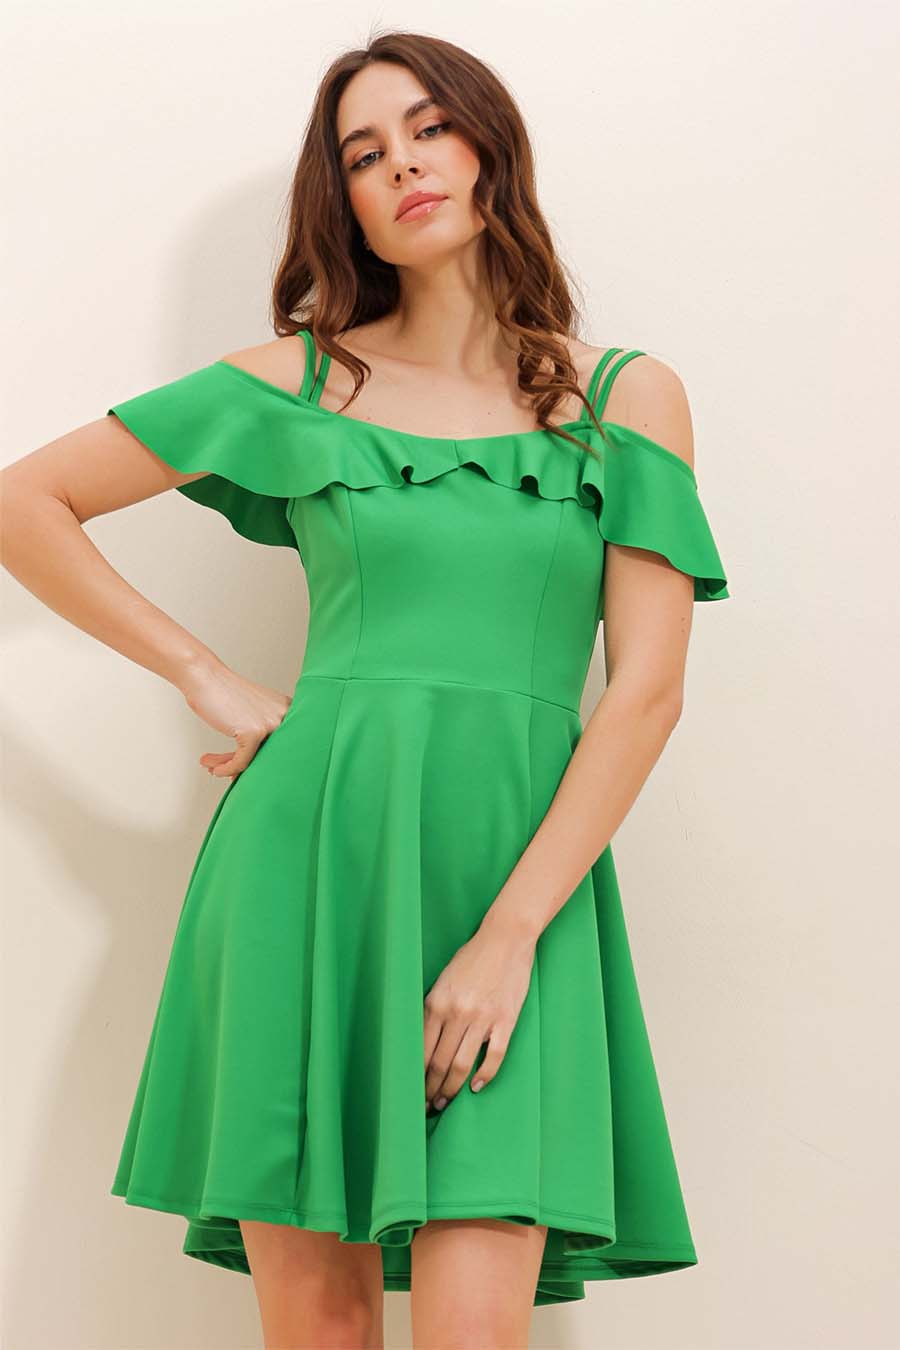 Γυναικείο φόρεμα Kaiea, Πράσινο 3